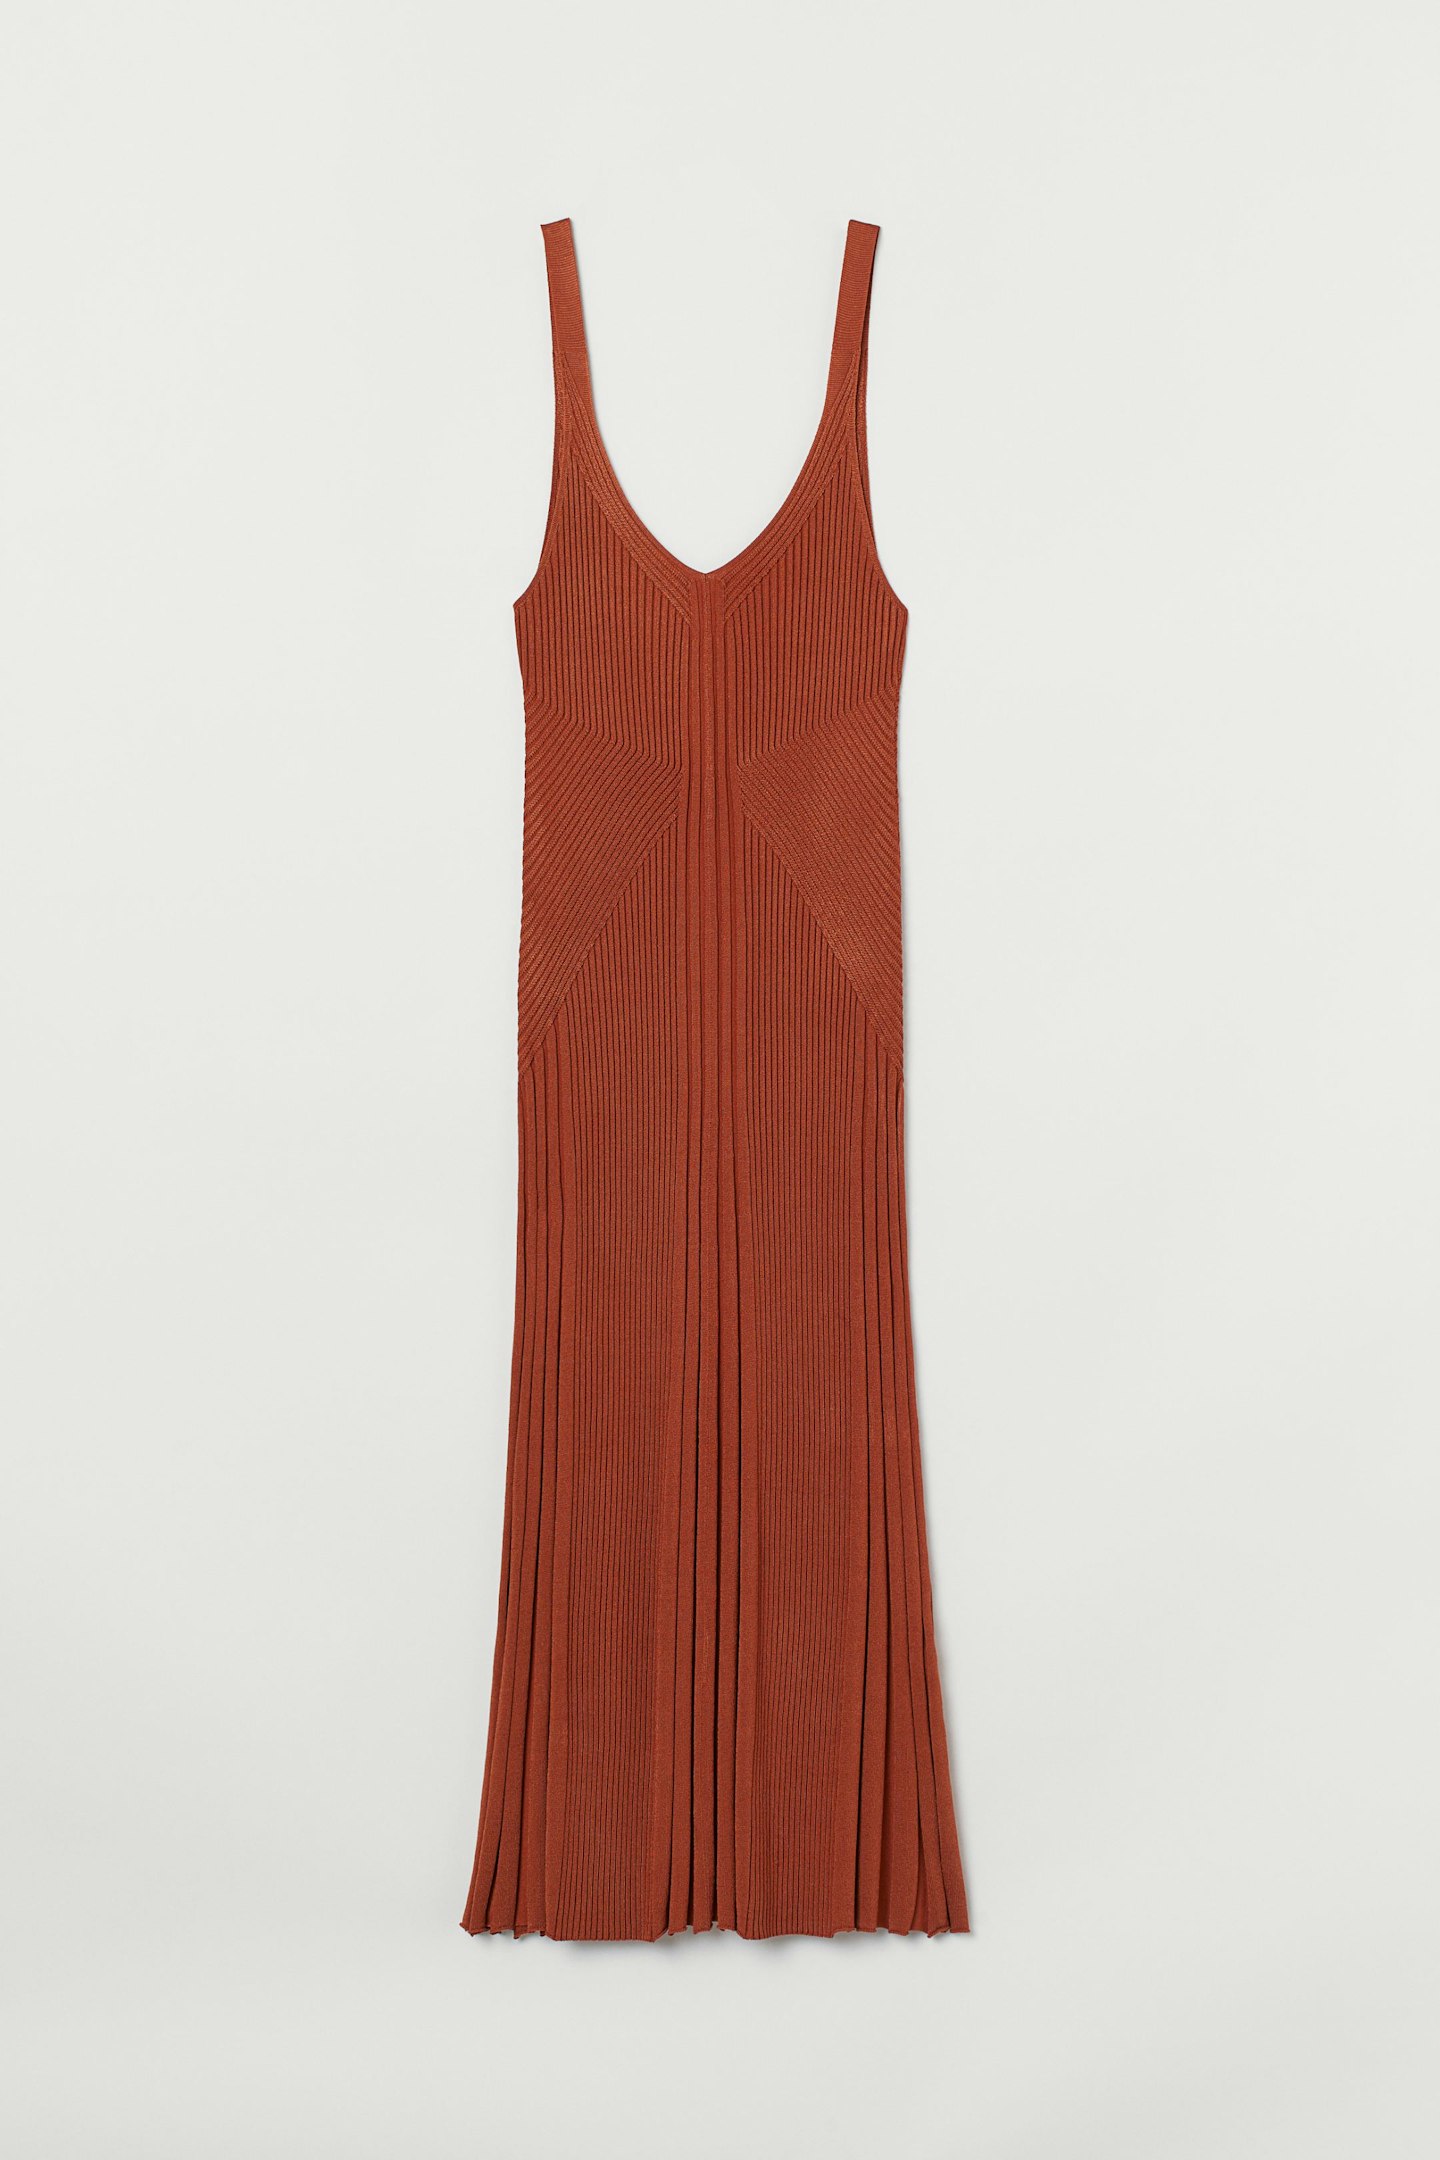 H&M, Rib-Knit Dress, £39.99